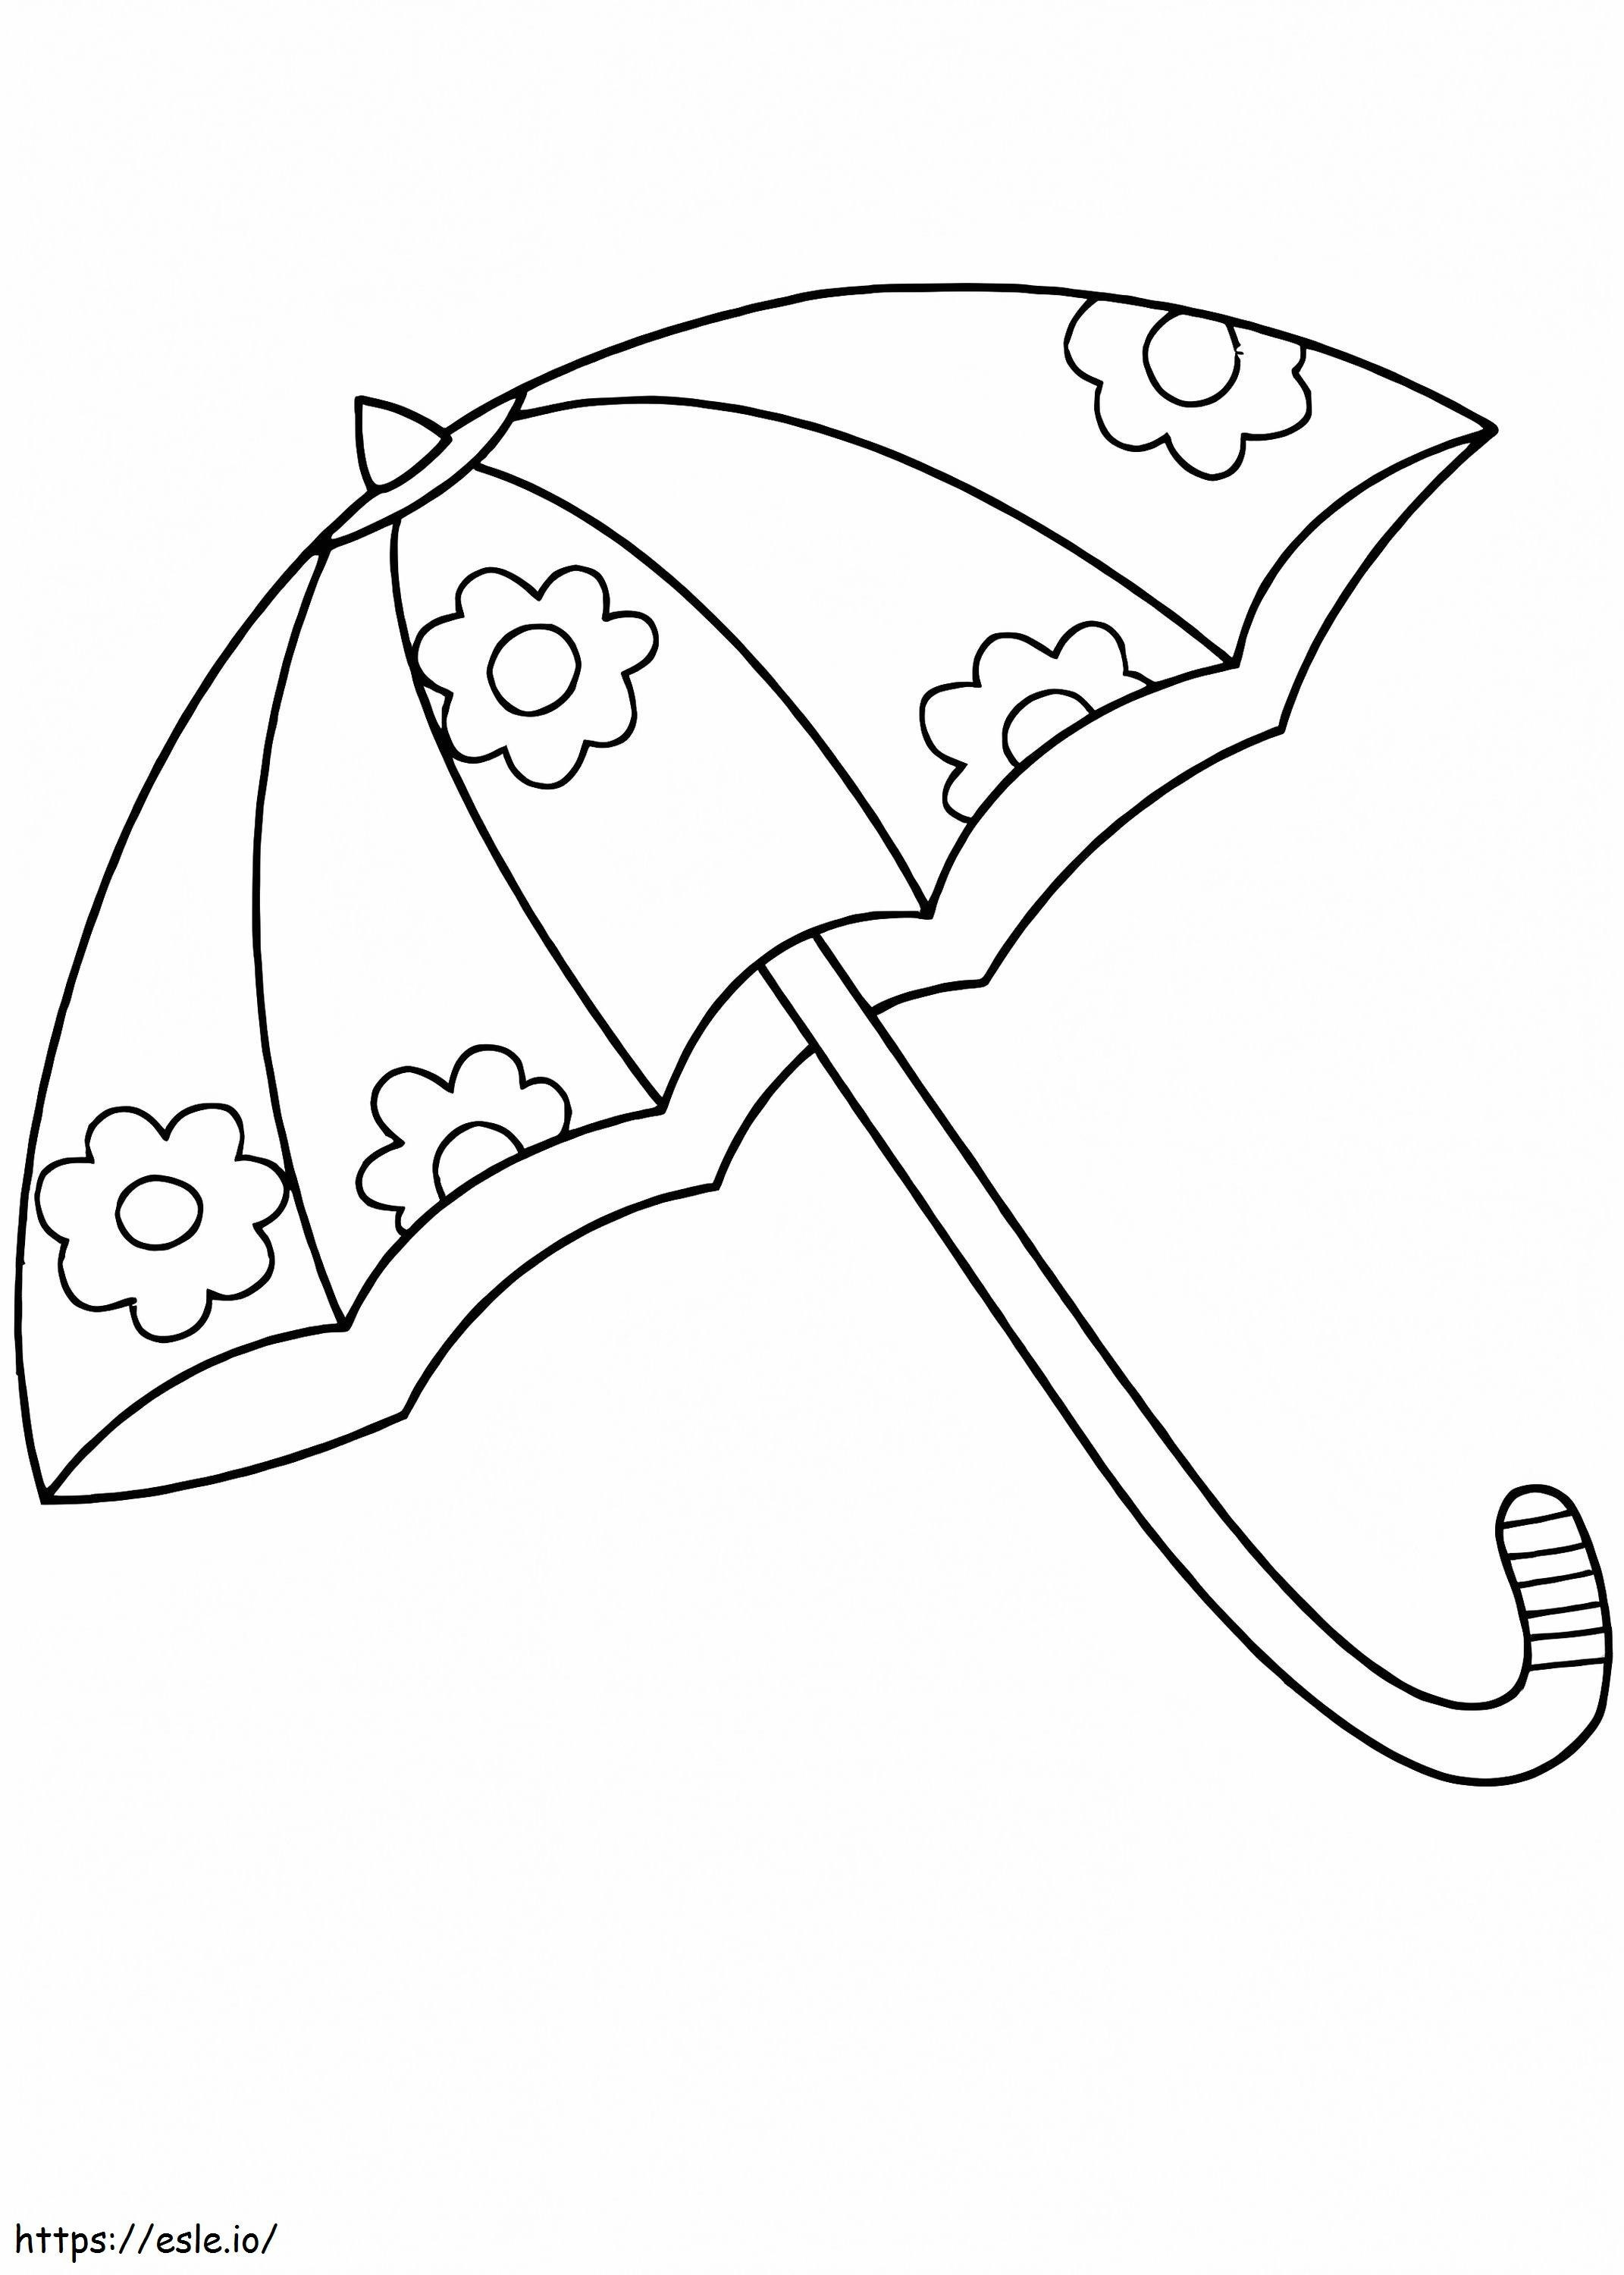 Güzel Şemsiye boyama